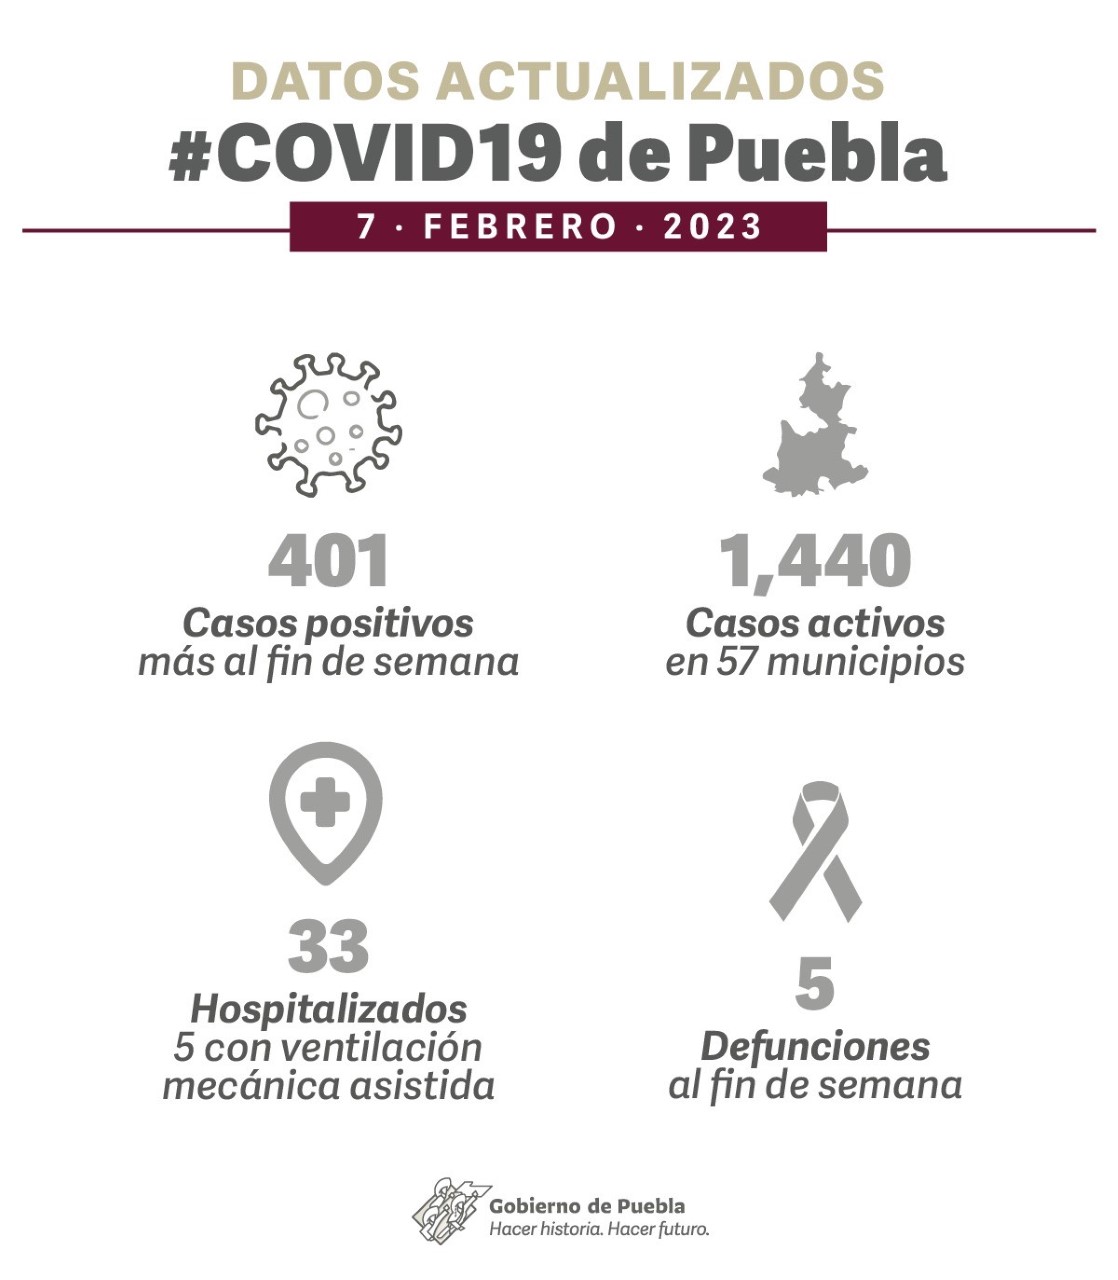 Video desde Puebla: Fin de semana largo con 5 defunciones más por Covid en la entidad